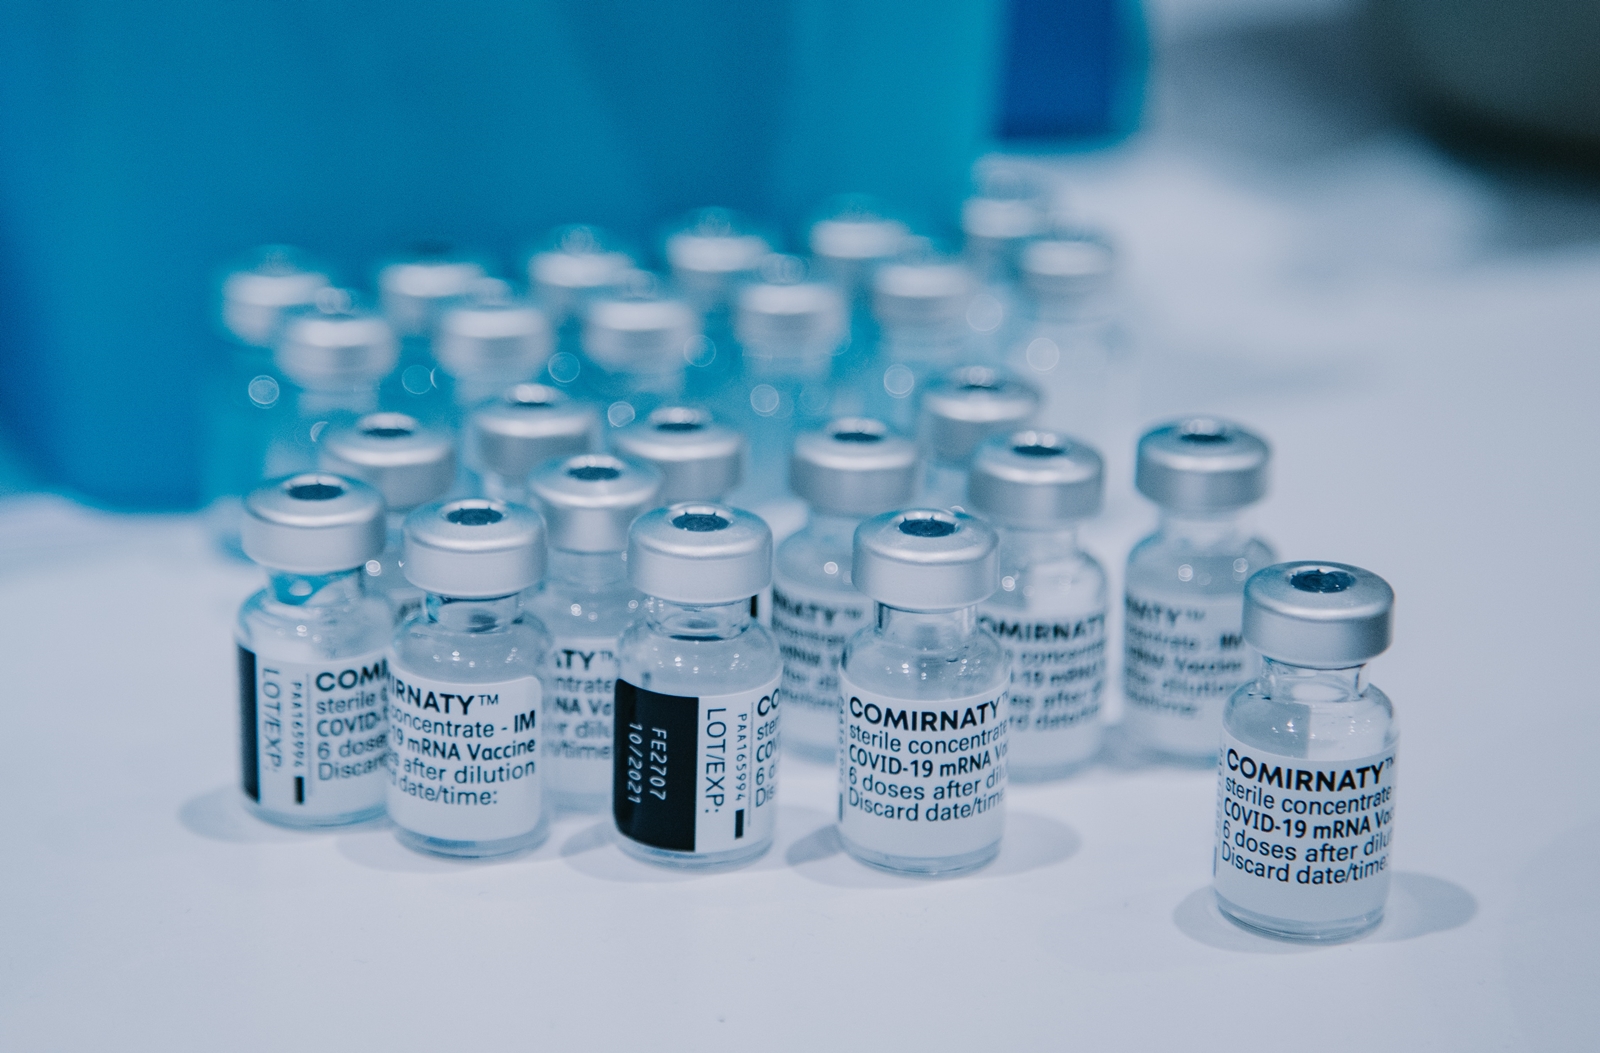 Δωρεάν εμβόλιο γρίπης: Oι τρεις κατηγορίες πολιτών που δεν χρειάζονται ιατρική συνταγή